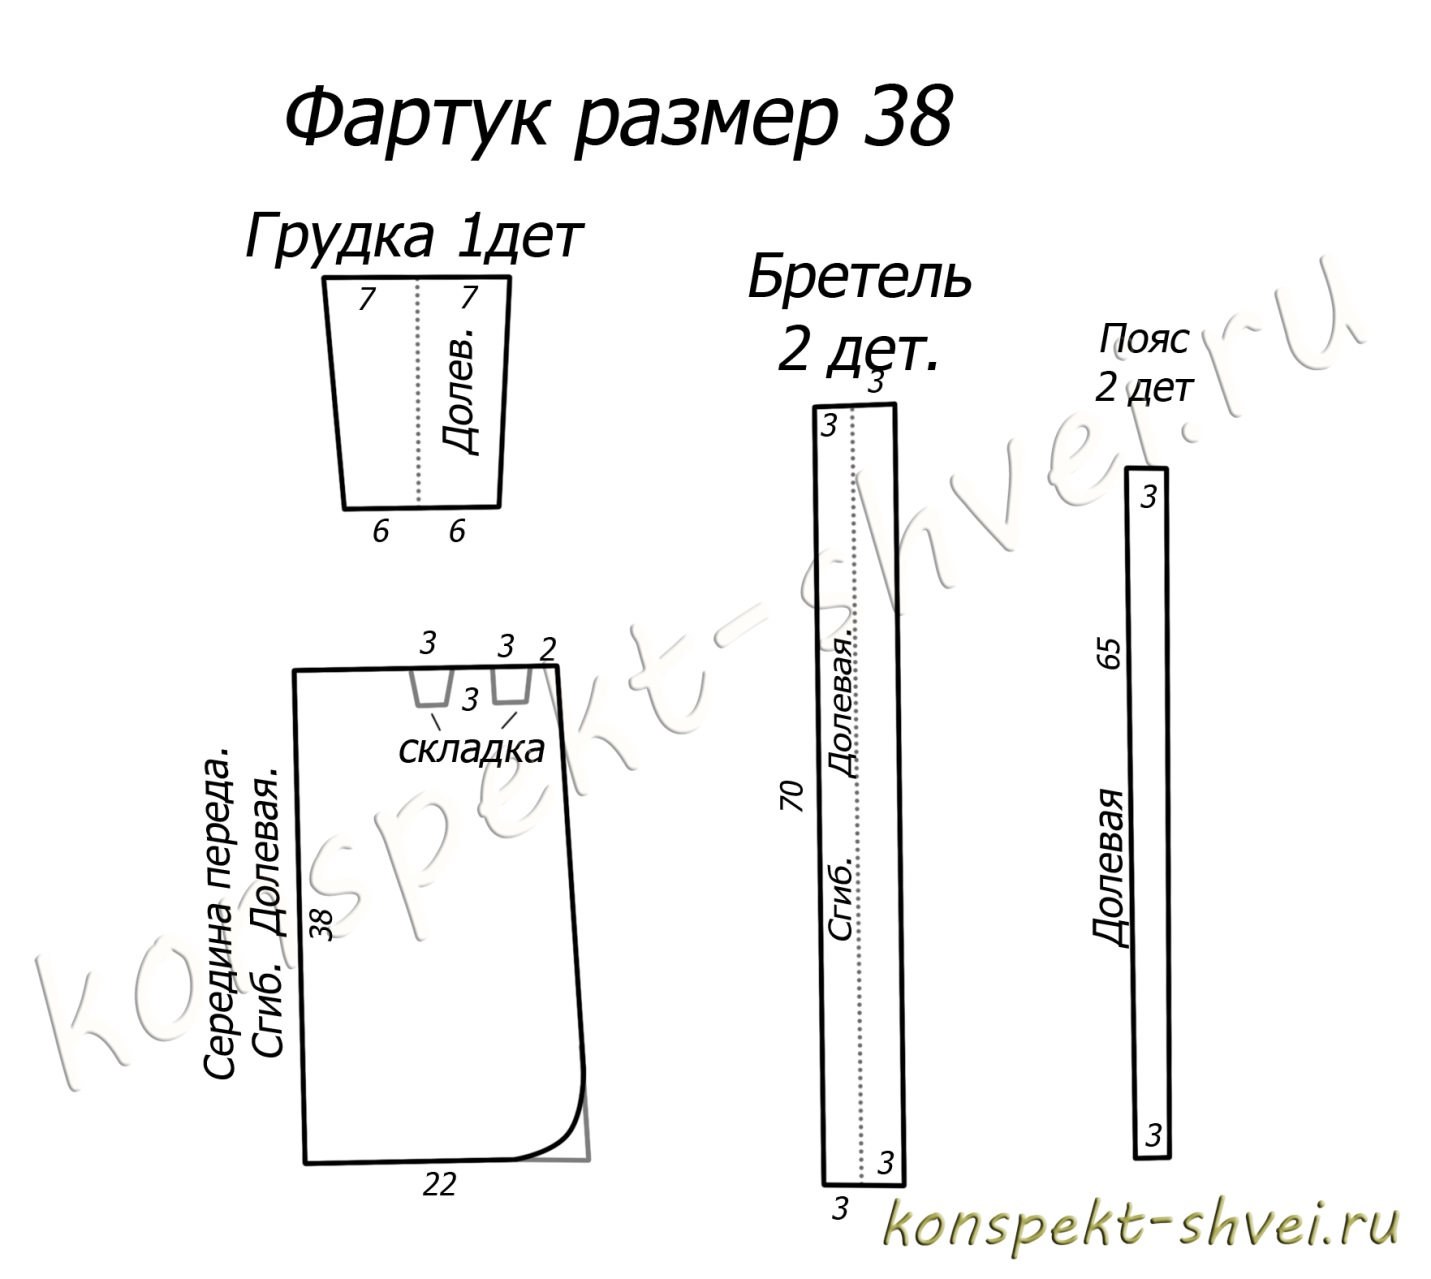 http://konspekt-shvei.ru/wp-content/uploads/2012/03/rty556181.jpg